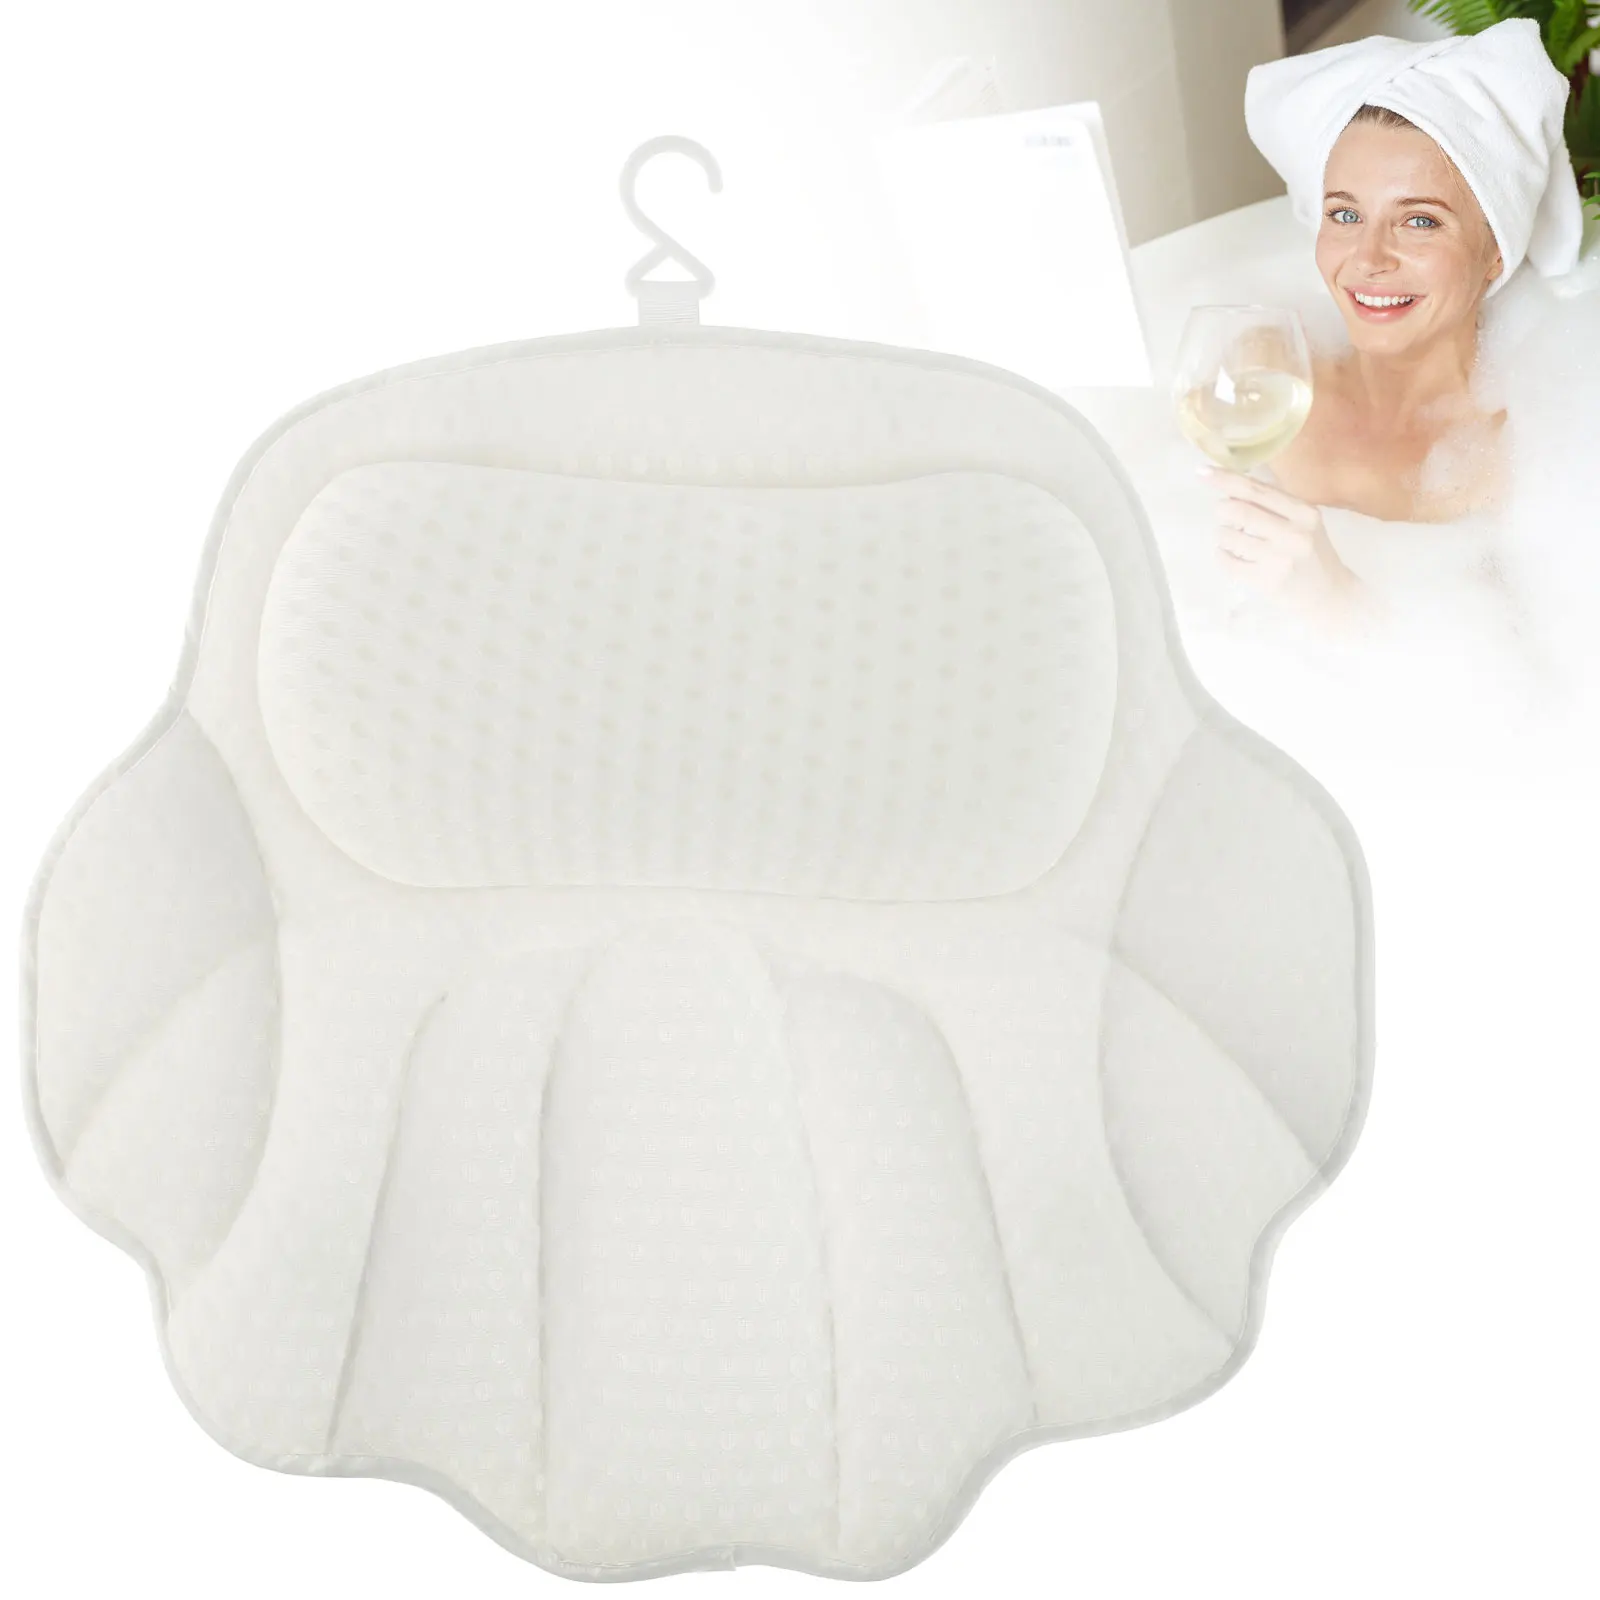 

Bath Pillow with 6 Powerful Suction Cups 4D Breathable Mesh Bathtub Spa Pillow Ergonomic Bathtub Cushion Soft Bath Tub Pillow